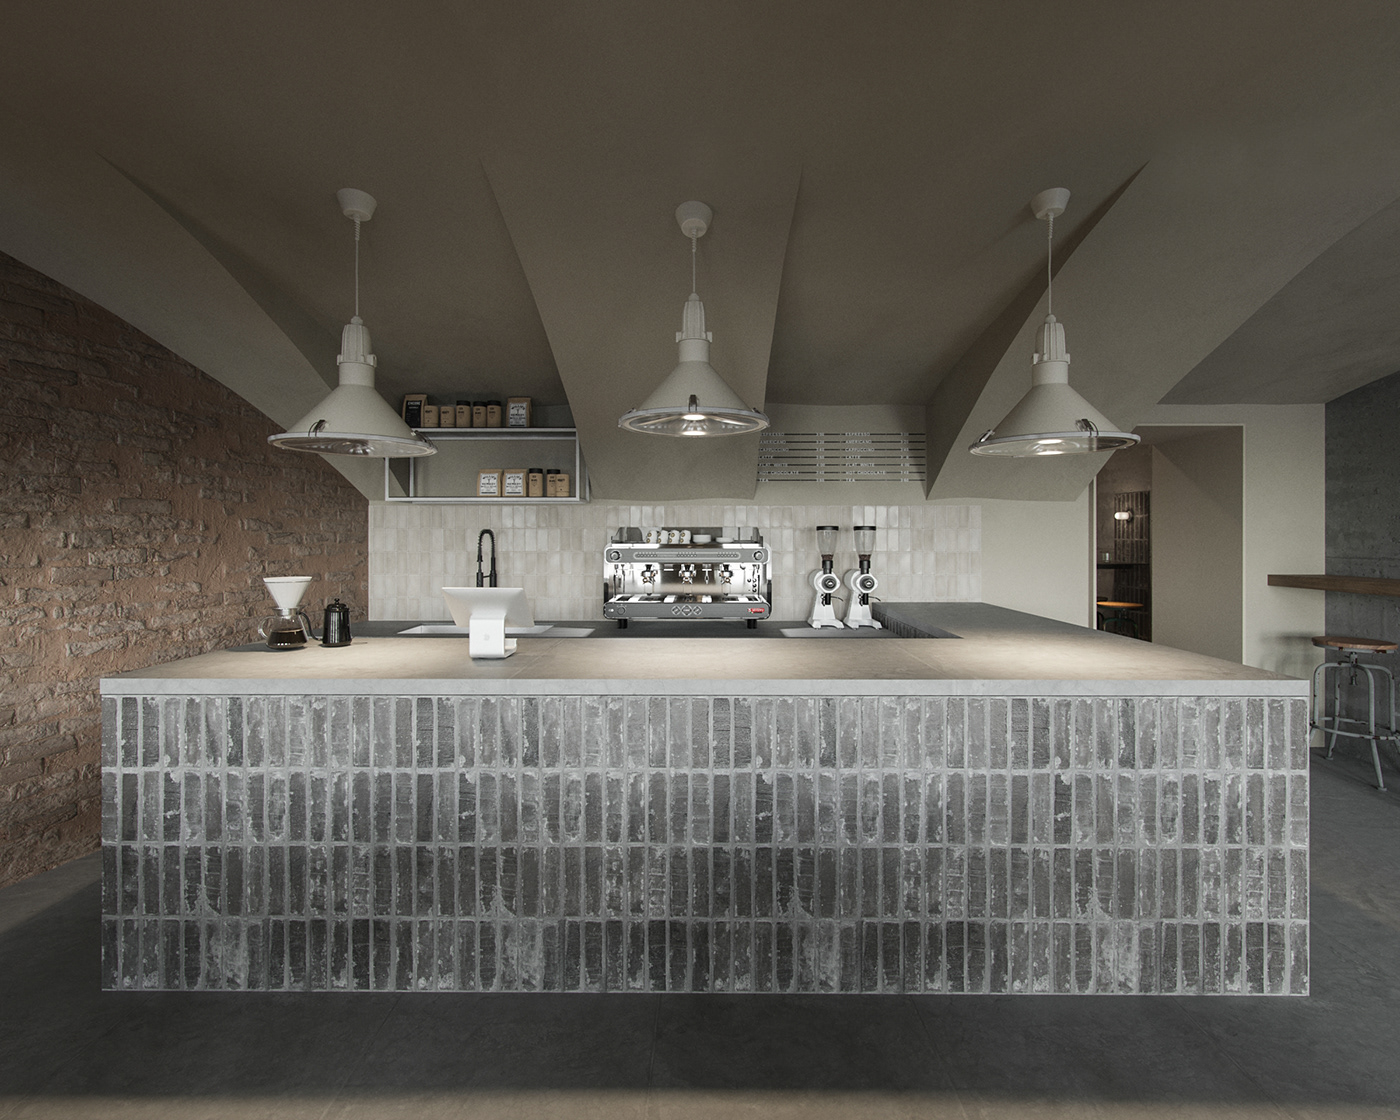 3ds max architecture brick cofee coffee shop concept designe interior small Small Business Tiny